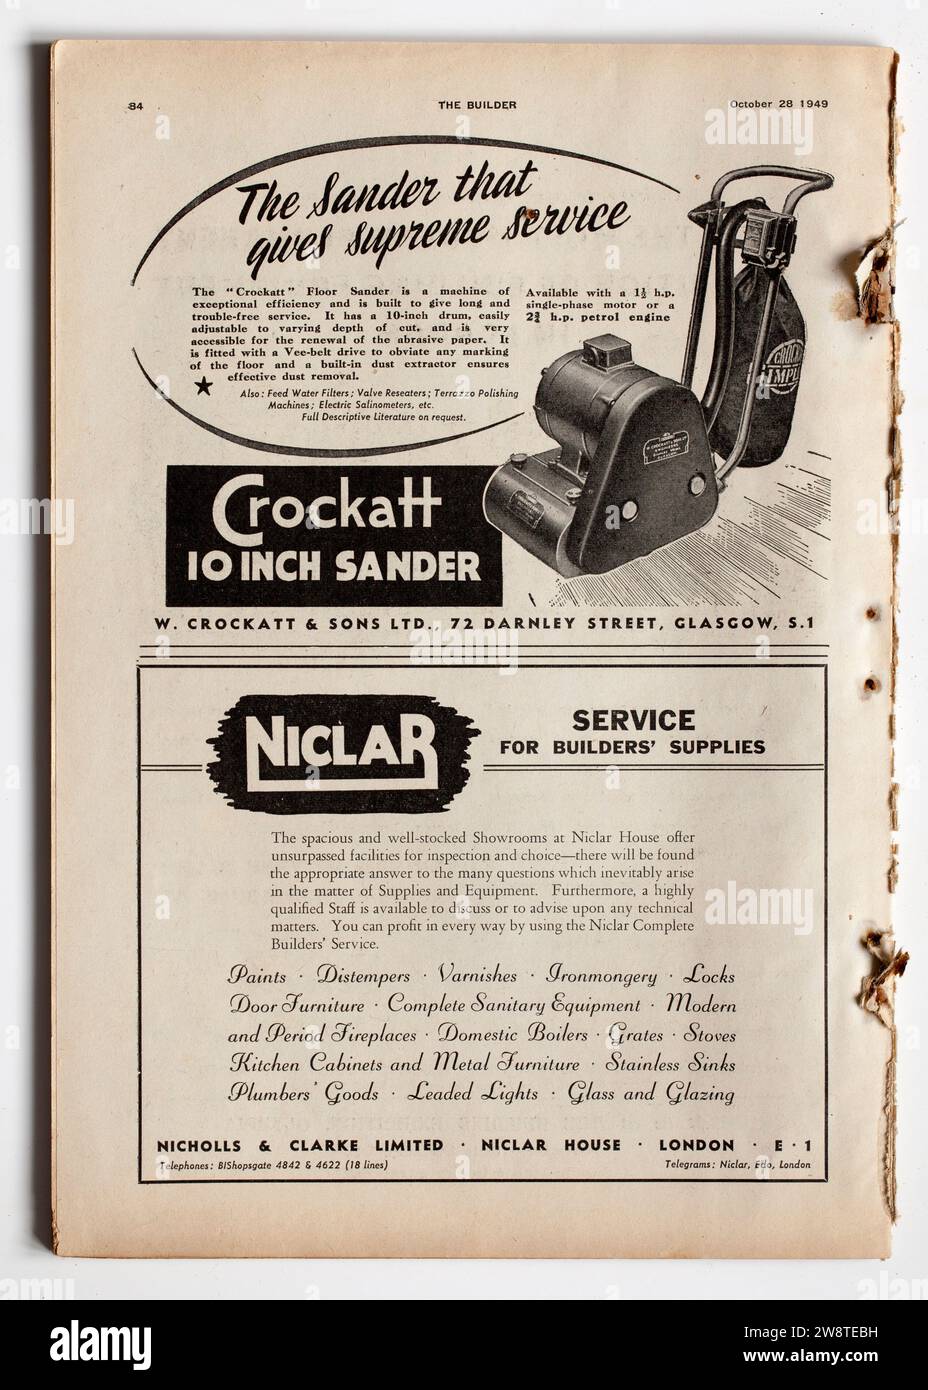 Pubblicità da una copia di 1940s The Builder Magazine - Crockatt Sande r - Niclar Foto Stock